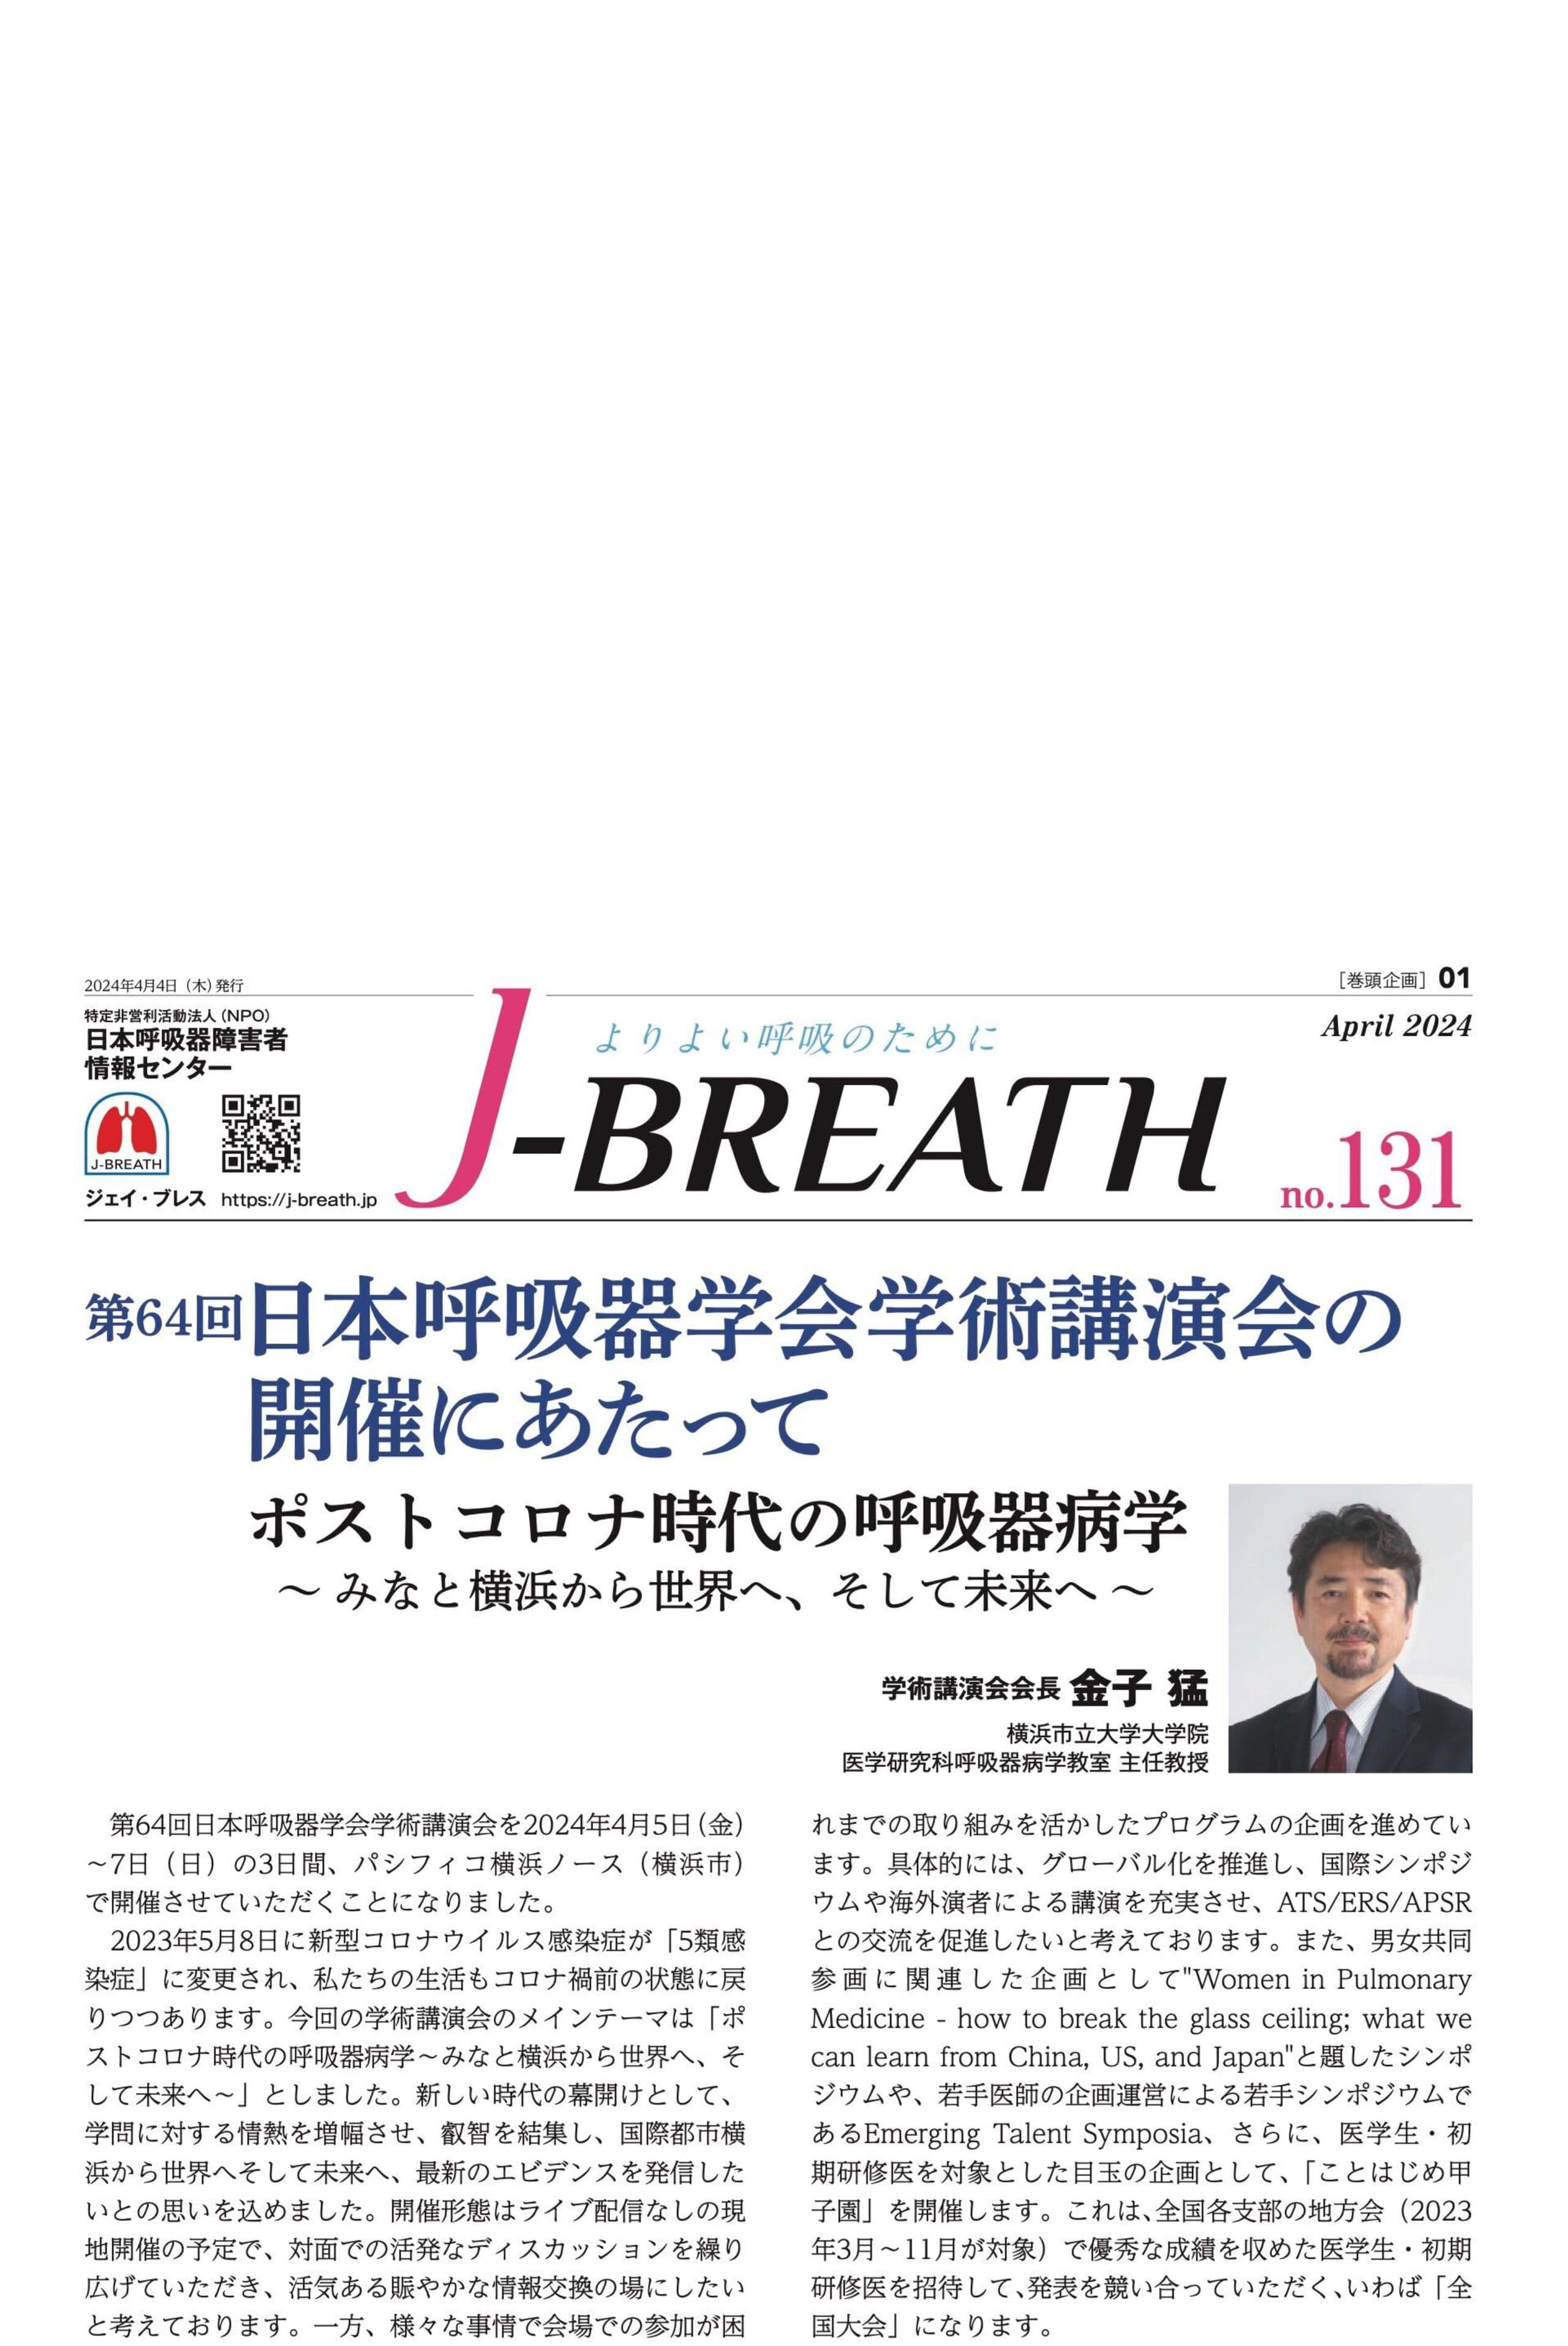 会報紙「J-BREATH 」